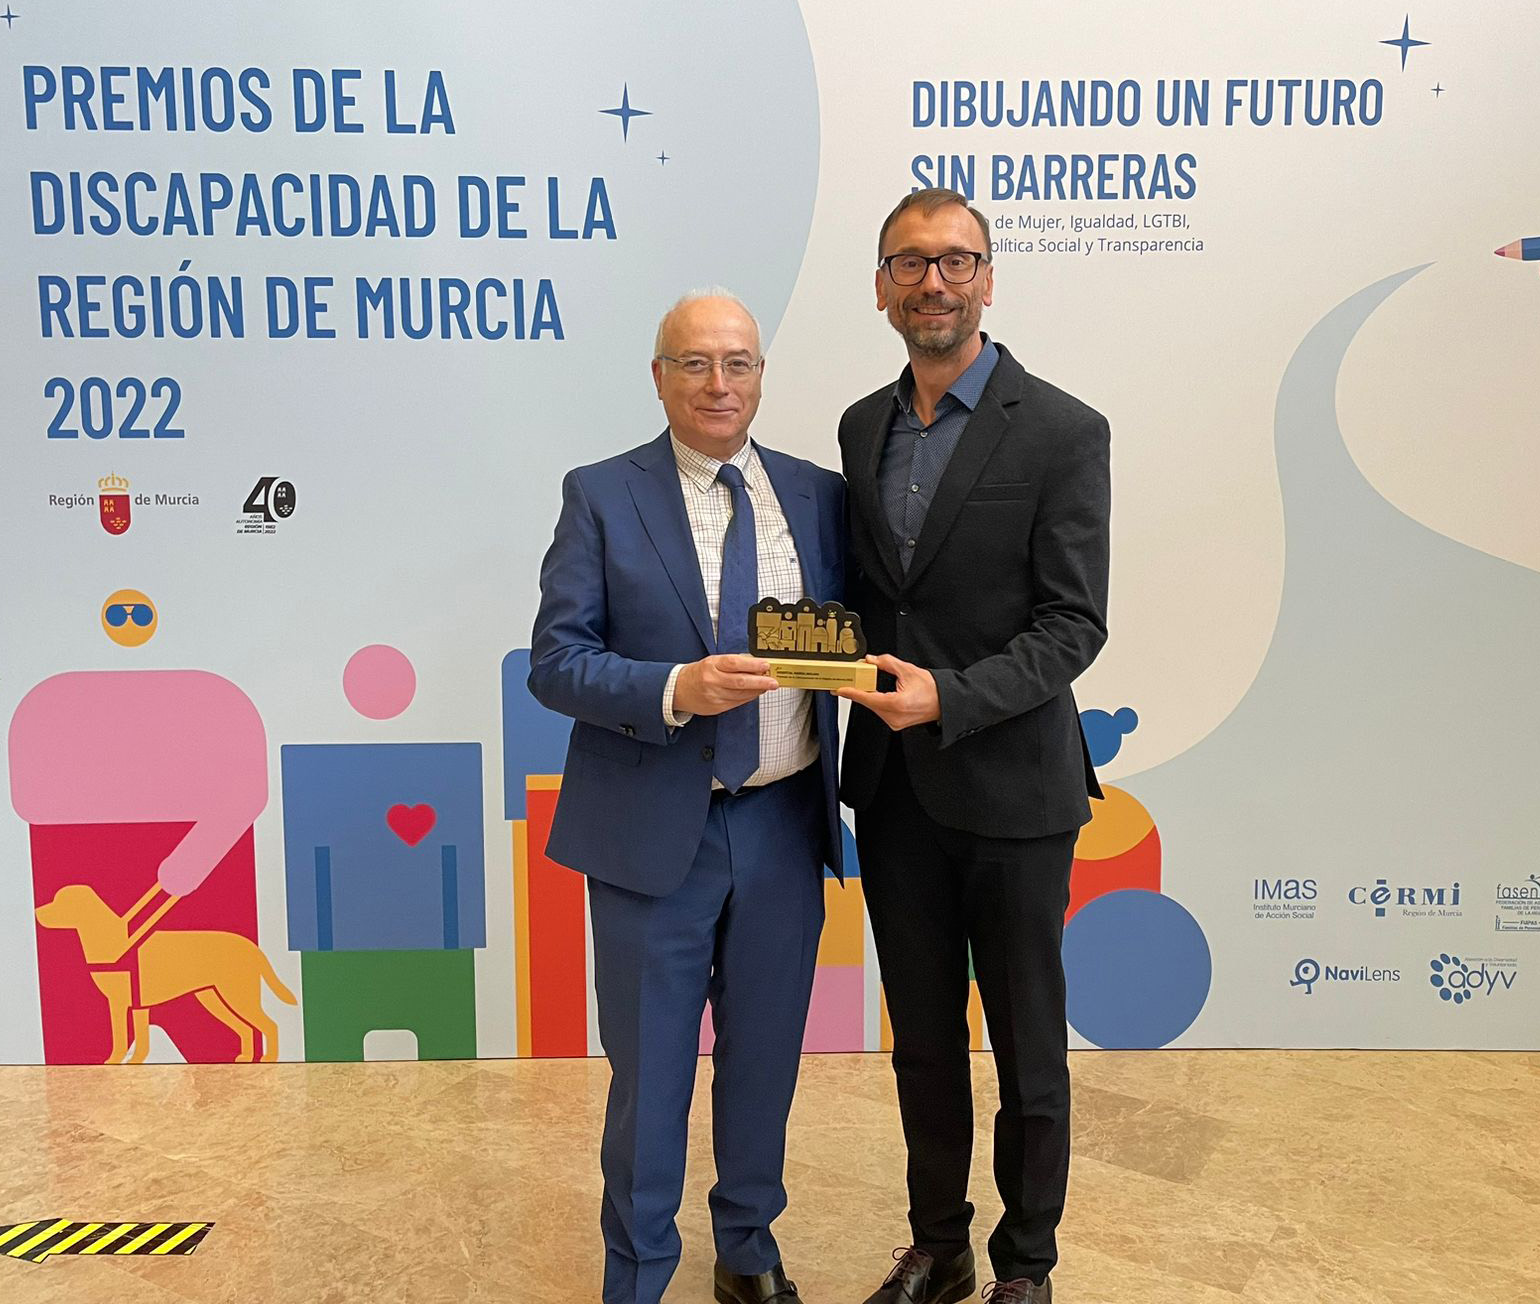 Ribera Hospital de Molina, premio de la discapacidad de la Región de Murcia